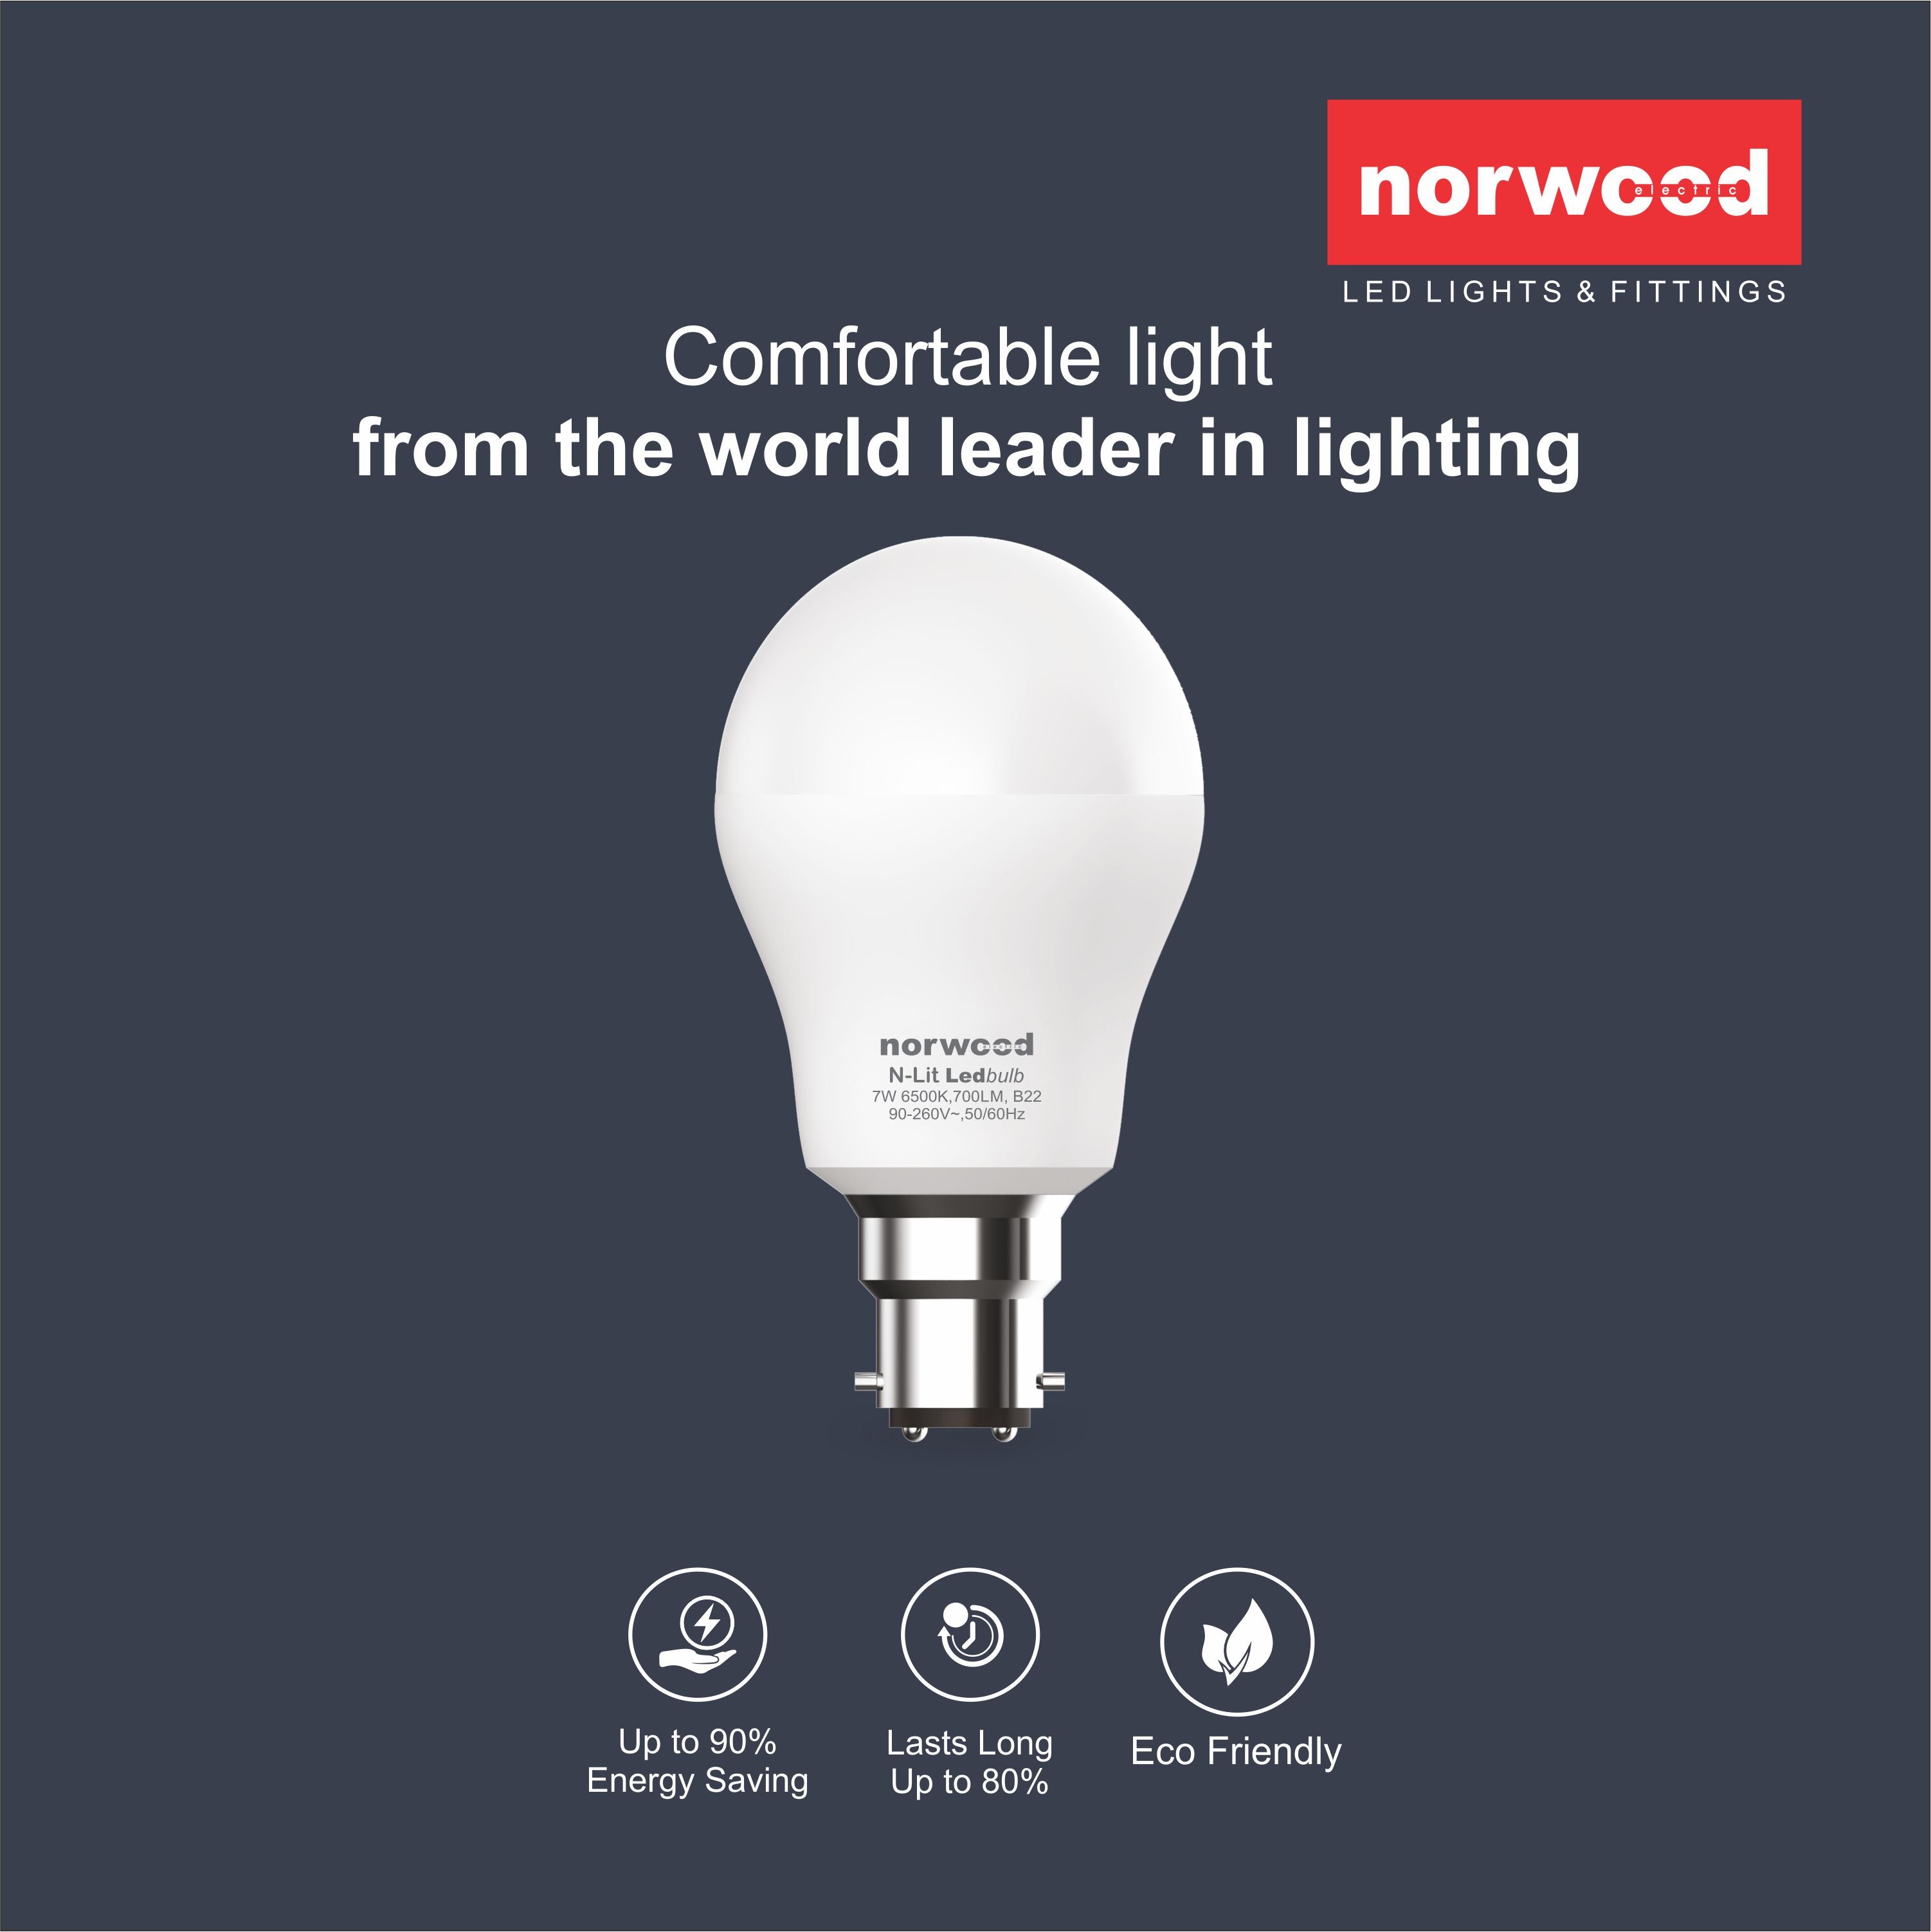 N-Lit LED Bulb